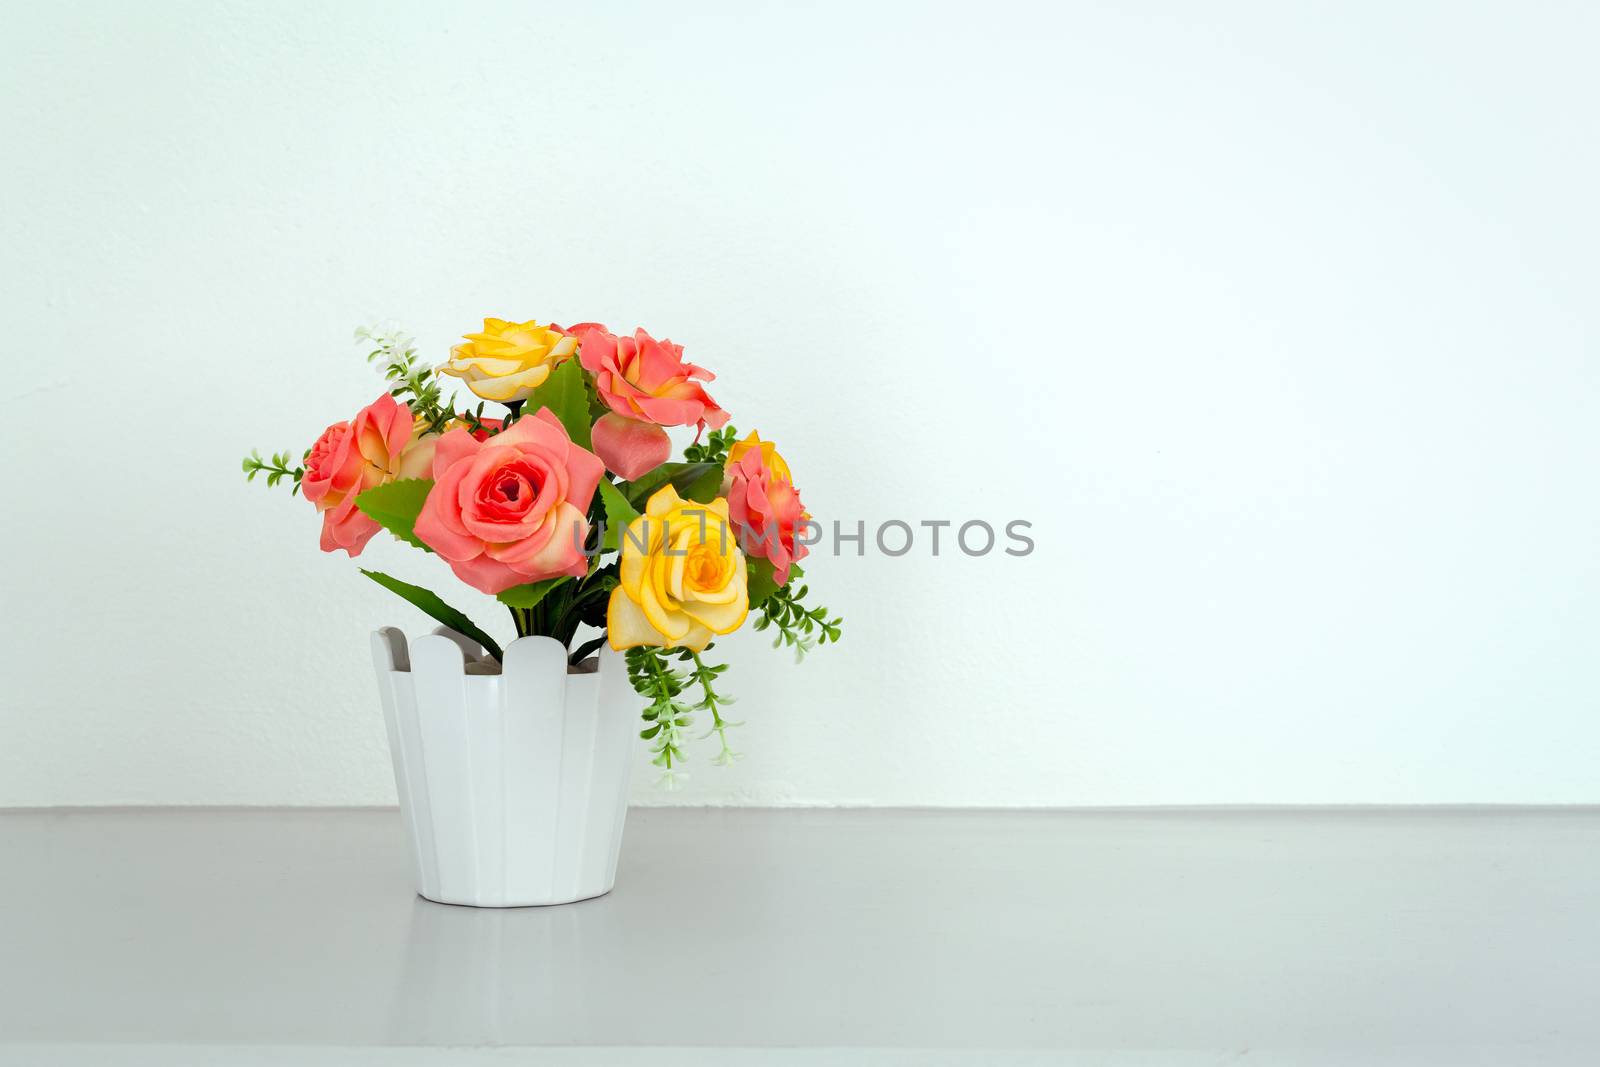 flower on white table by FrameAngel